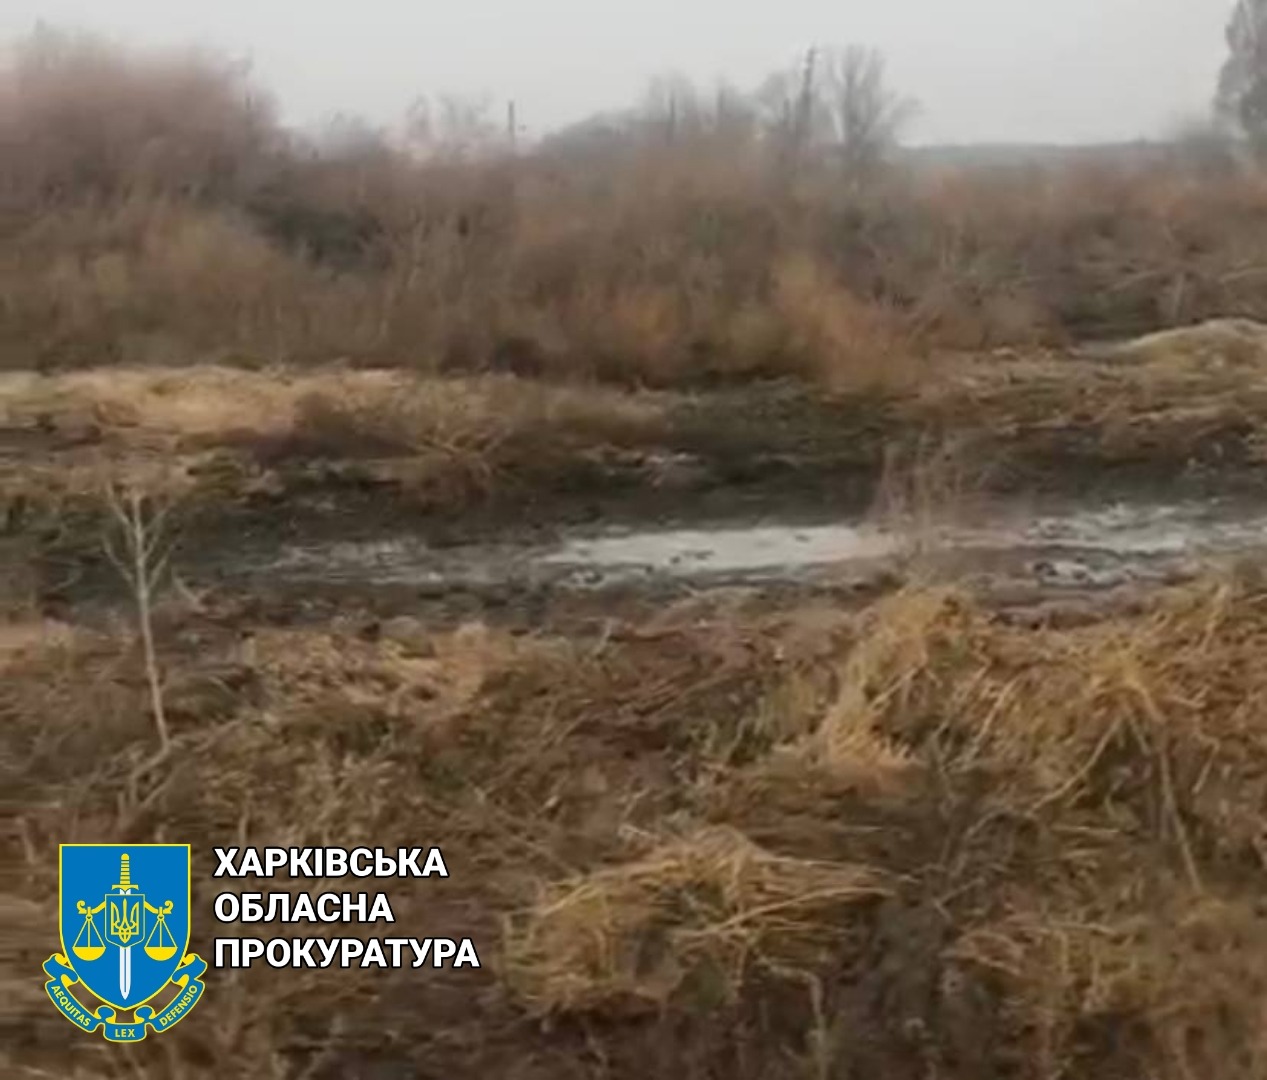 Новини Харкова: директора ферми винуватять у забрудненні земель